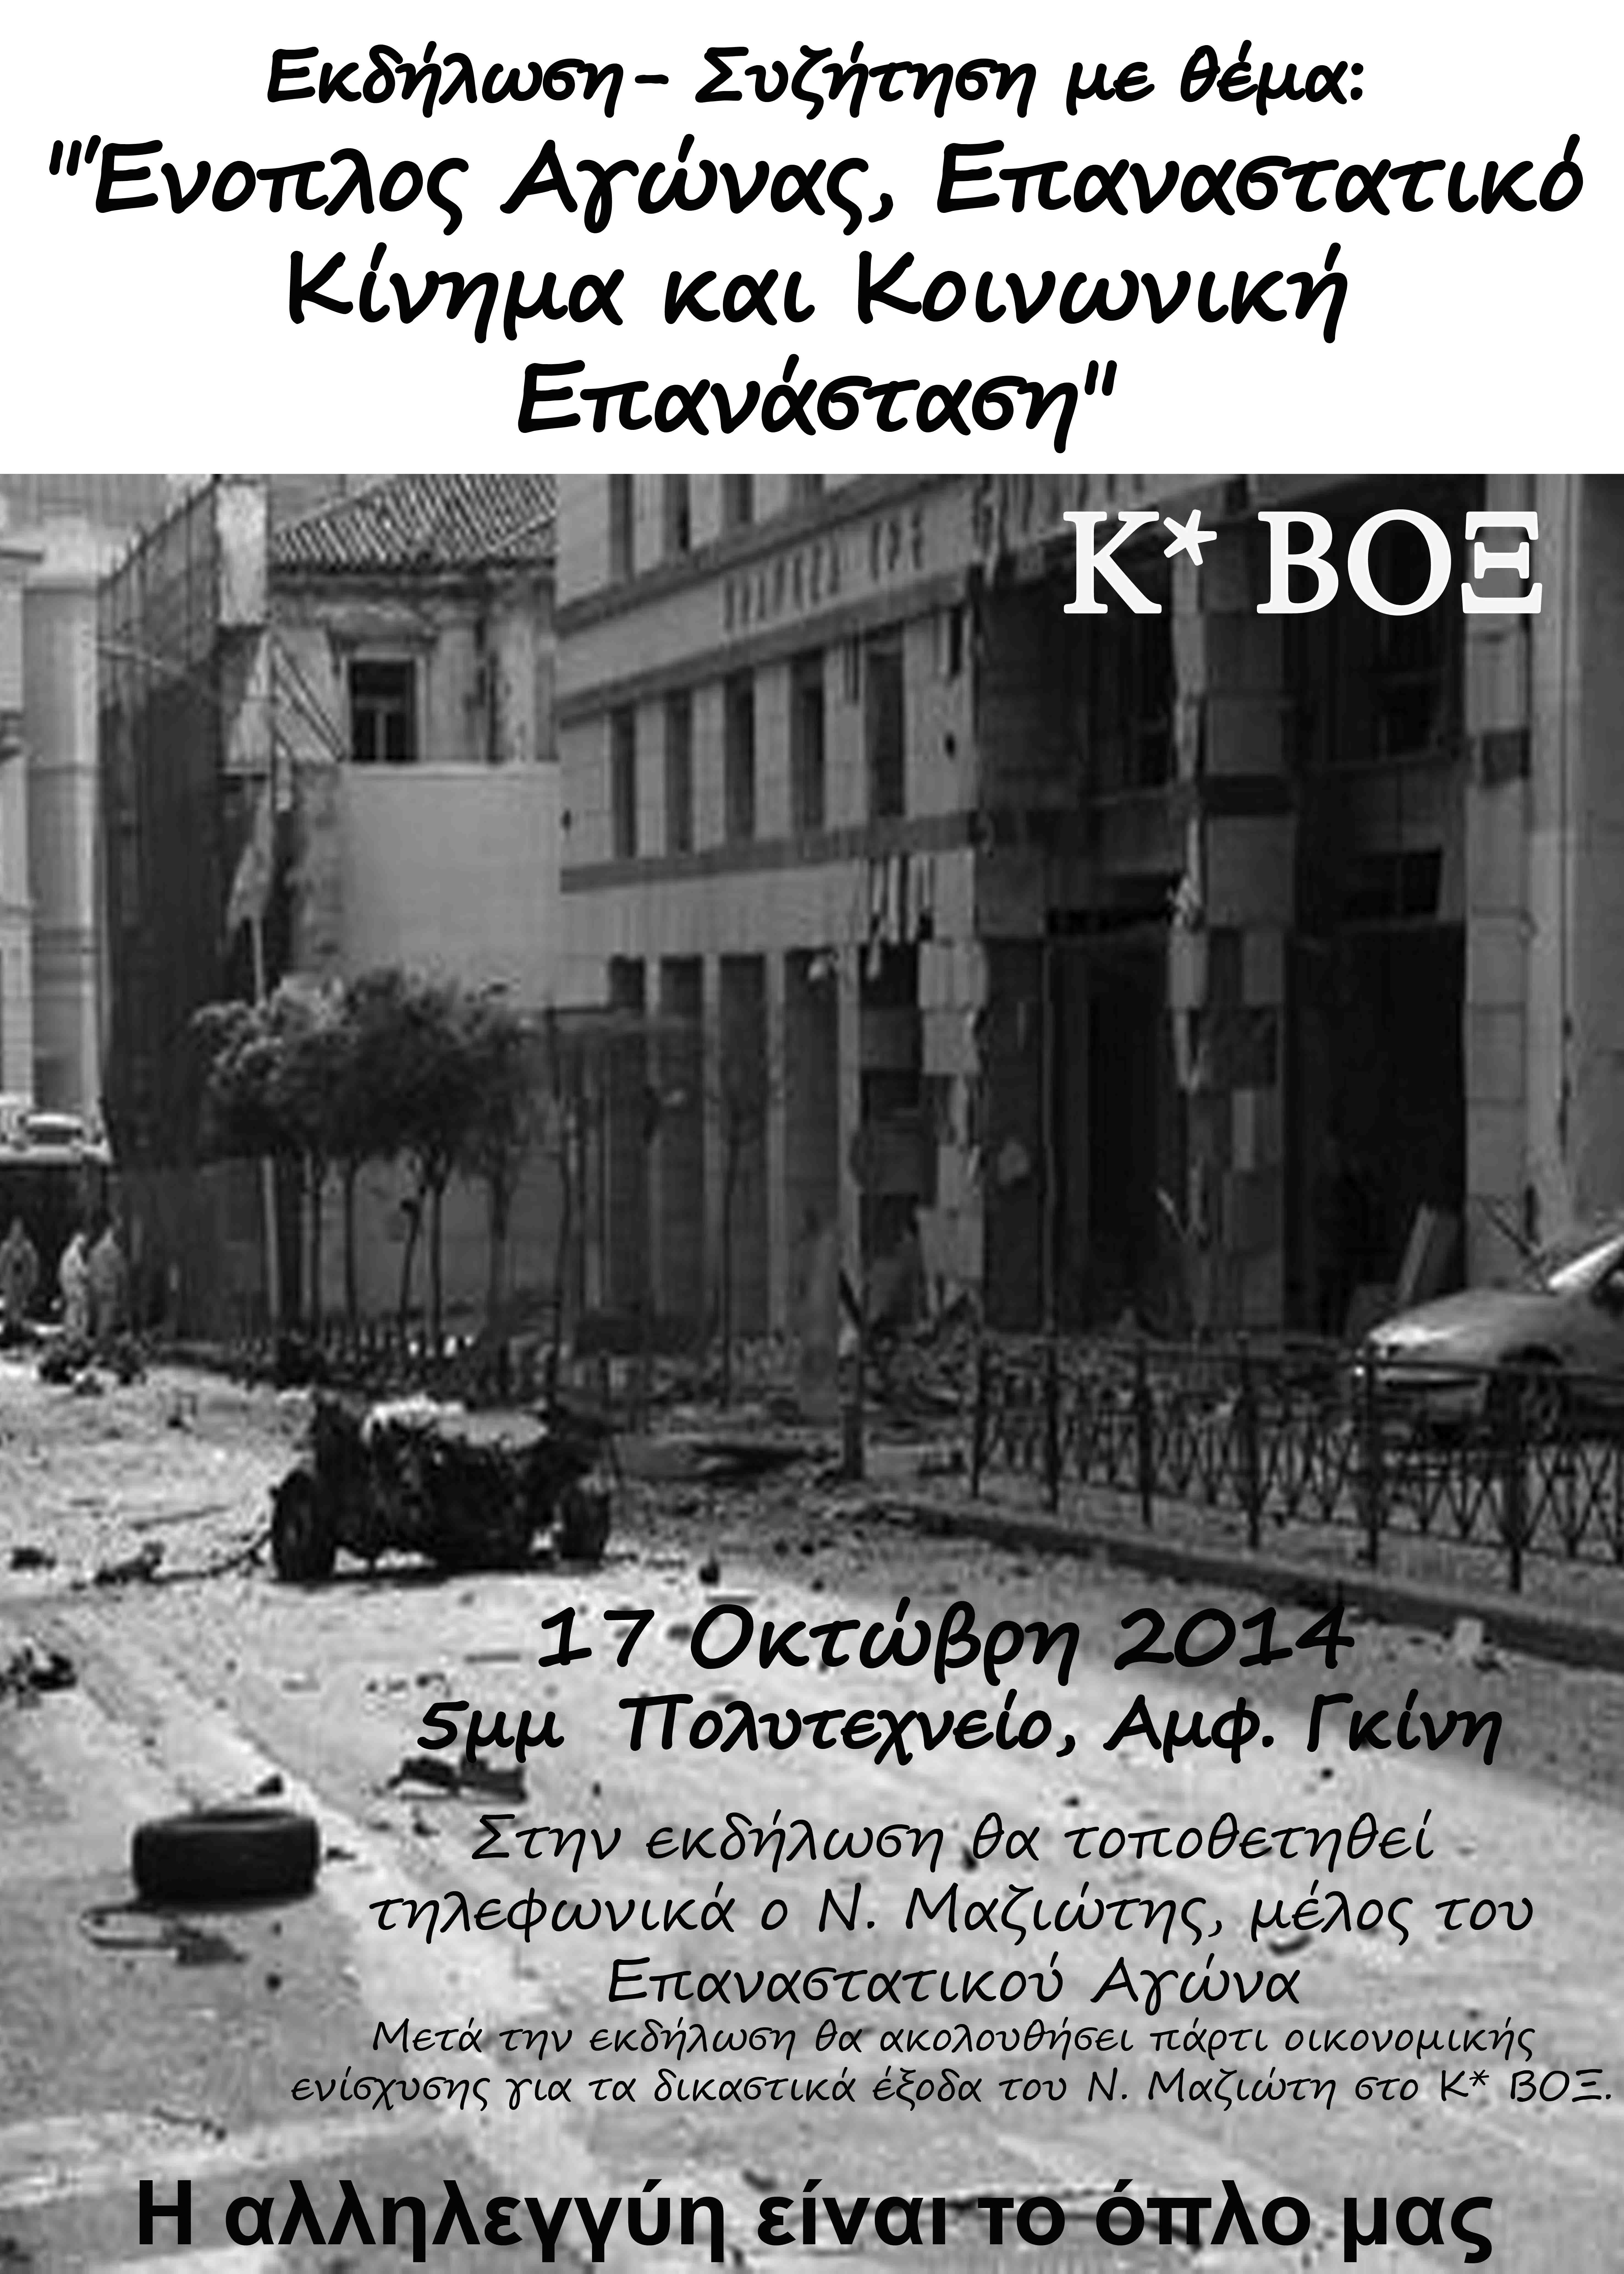 Κ*ΒΟΞ : Παρασκευή 17/10, 17:00 – Εκδήλωση-συζήτηση με θέμα “Ένοπλος Αγώνας, Επαναστατικό Κίνημα και Κοινωνική Επανάσταση” με τοποθέτηση του Ν. Μαζιώτη